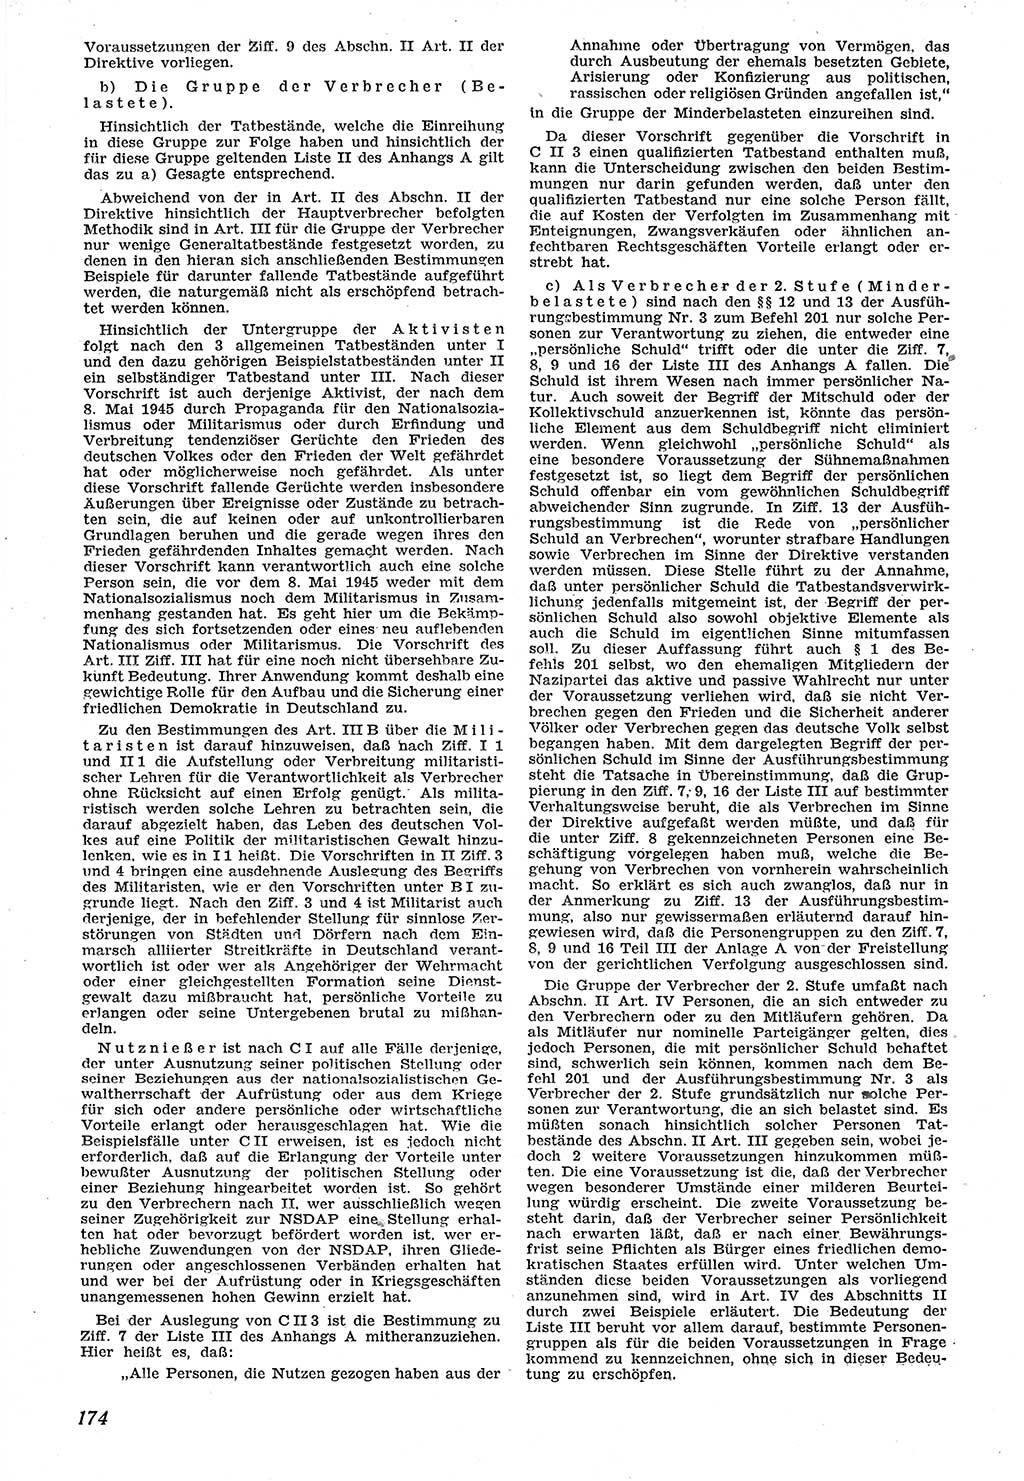 Neue Justiz (NJ), Zeitschrift für Recht und Rechtswissenschaft [Sowjetische Besatzungszone (SBZ) Deutschland], 1. Jahrgang 1947, Seite 174 (NJ SBZ Dtl. 1947, S. 174)